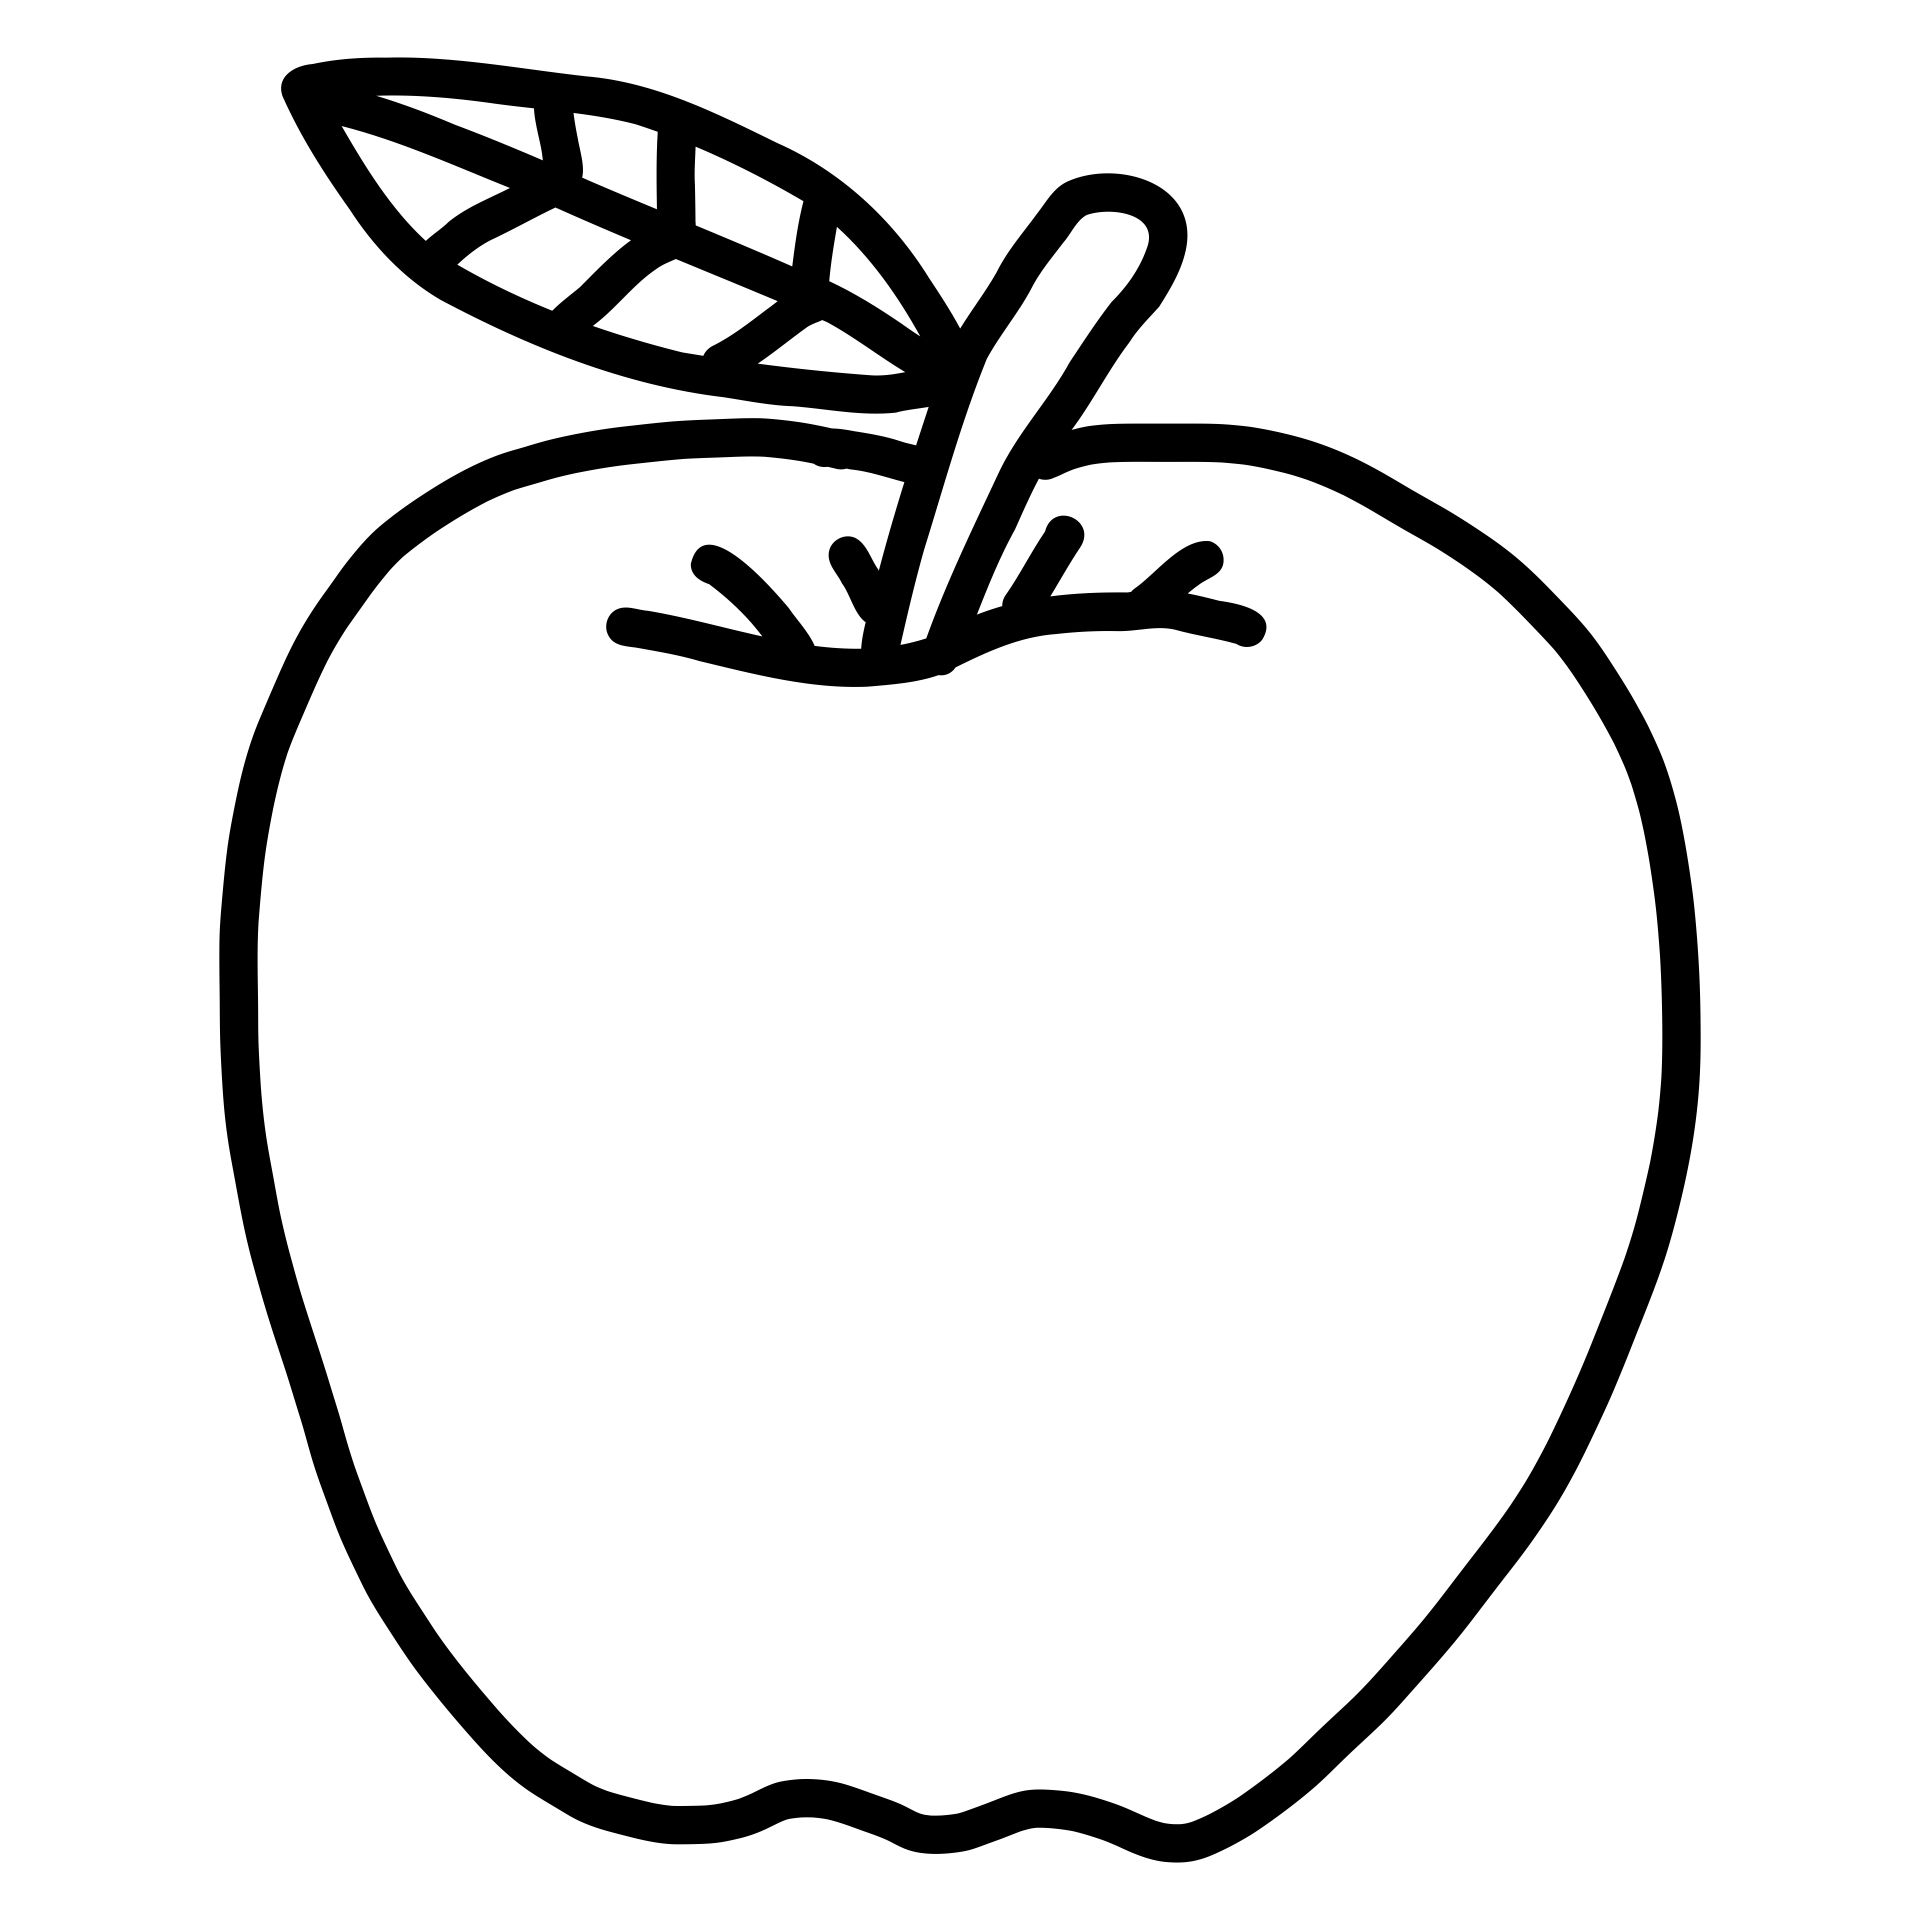 7 Best Images of Printable Apple Template Preschool - Free ...